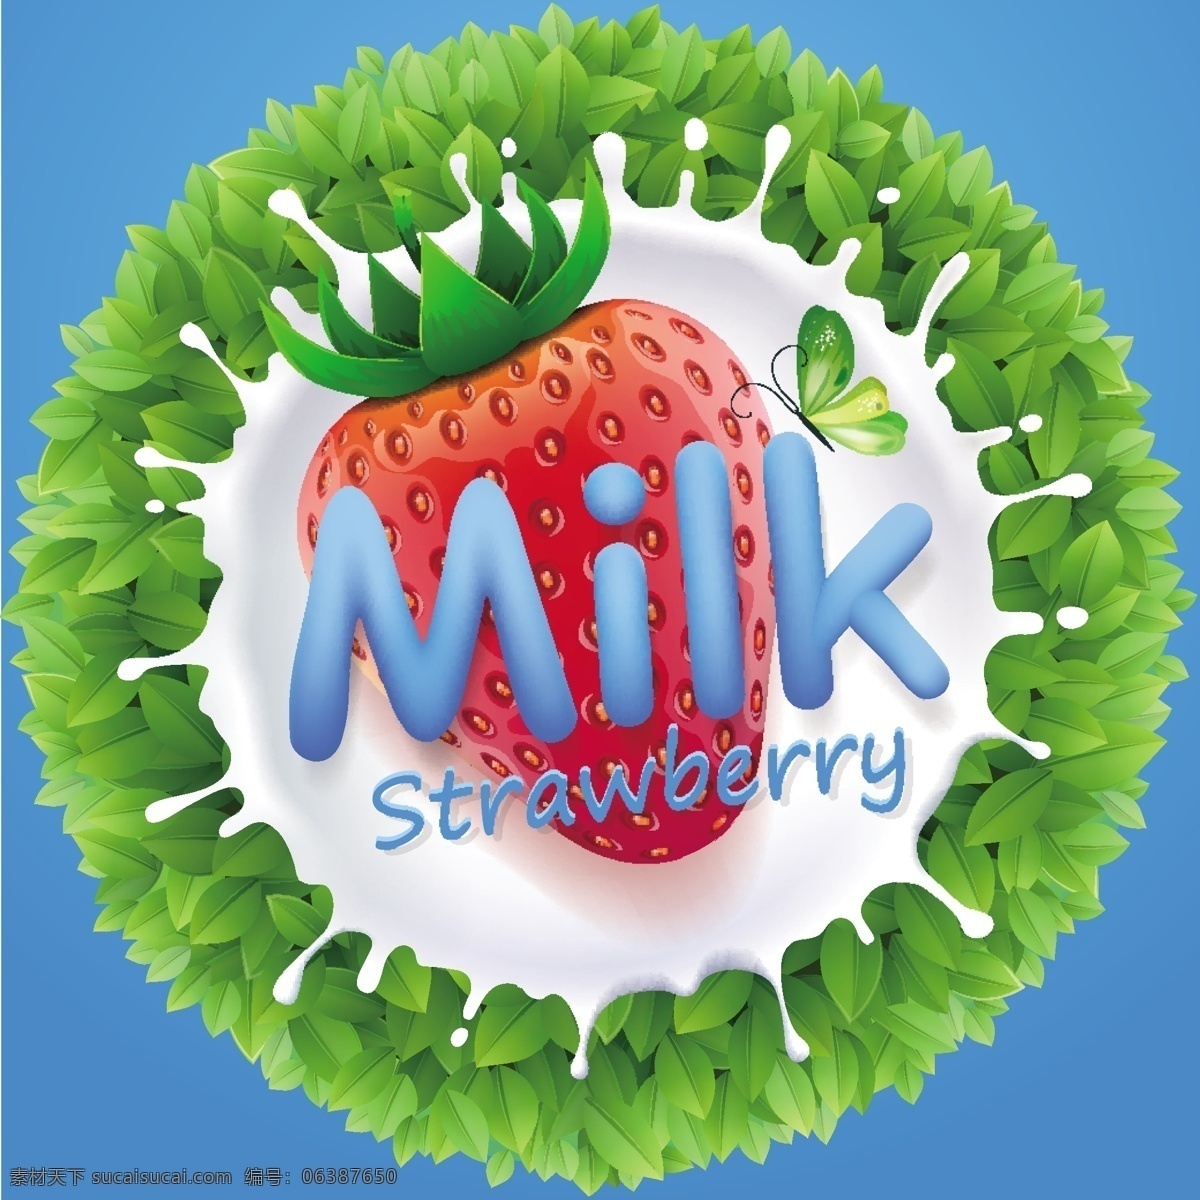 草莓 蝴蝶 牛奶 绿叶 白色 绿色 环保 美食 水果 广告 海报 创意 饮料 乳品 滴溅